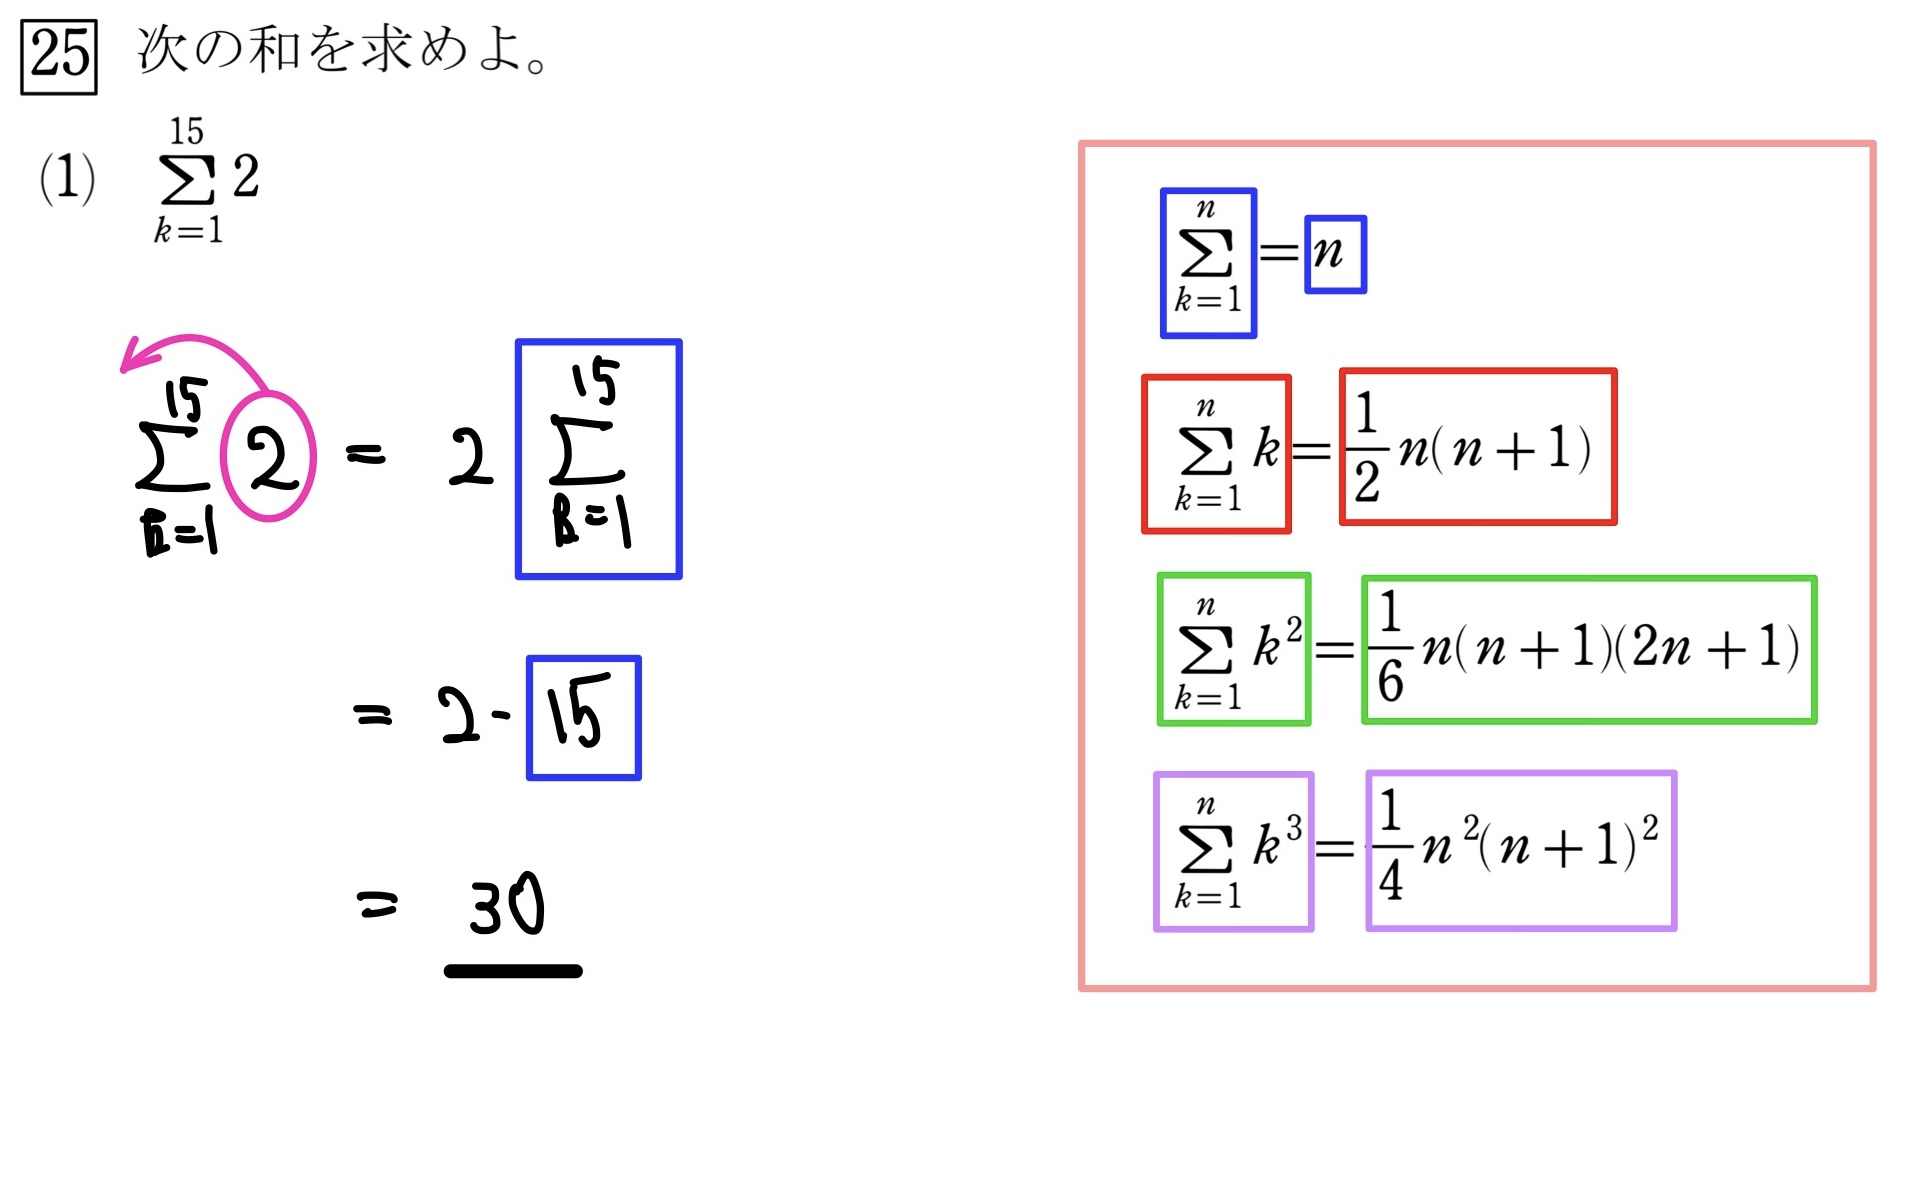 Σの計算(Σの上が数字) 解答1